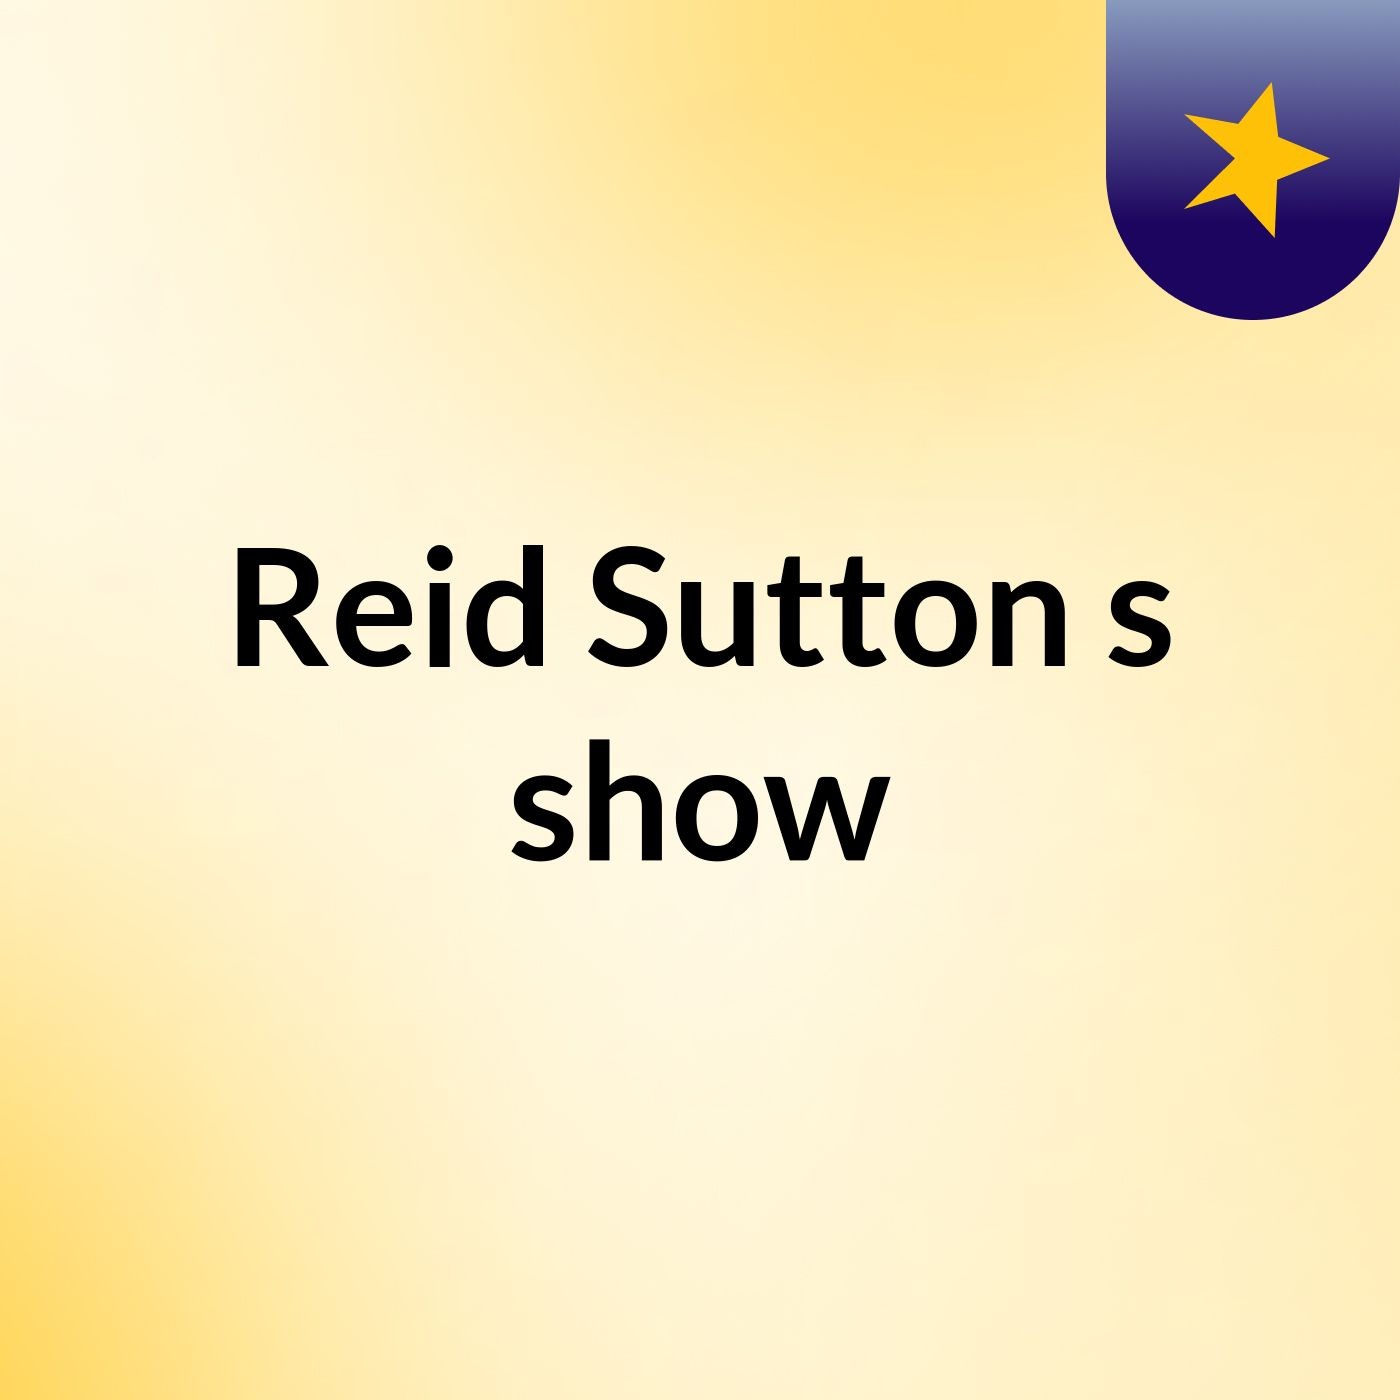 Reid Sutton's show